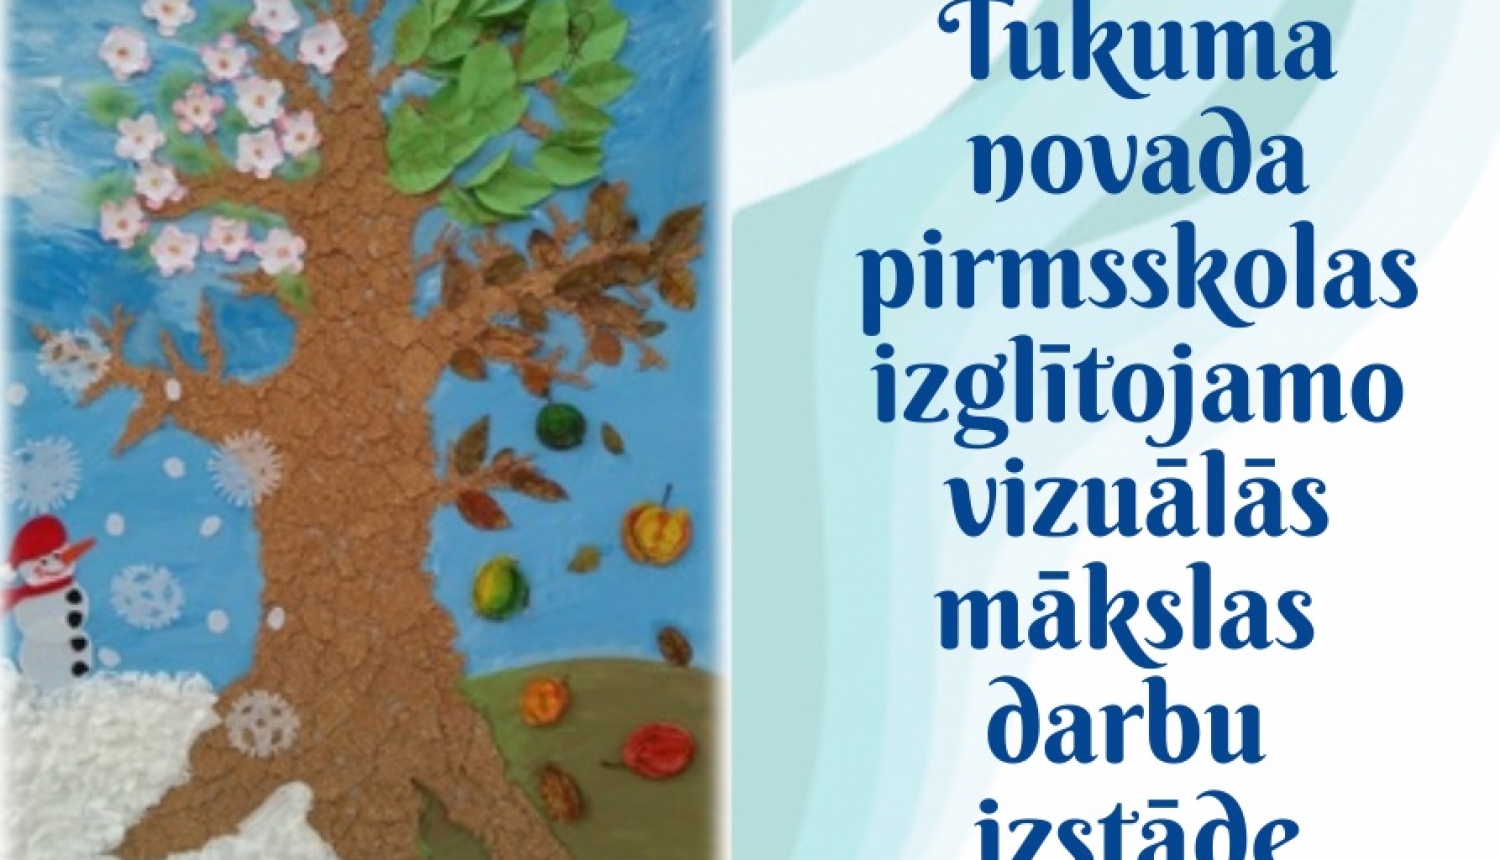 Tukuma novada pirmsskolas izglītojamo vizuālās mākslas darbu izstāde “Mana Latvija”